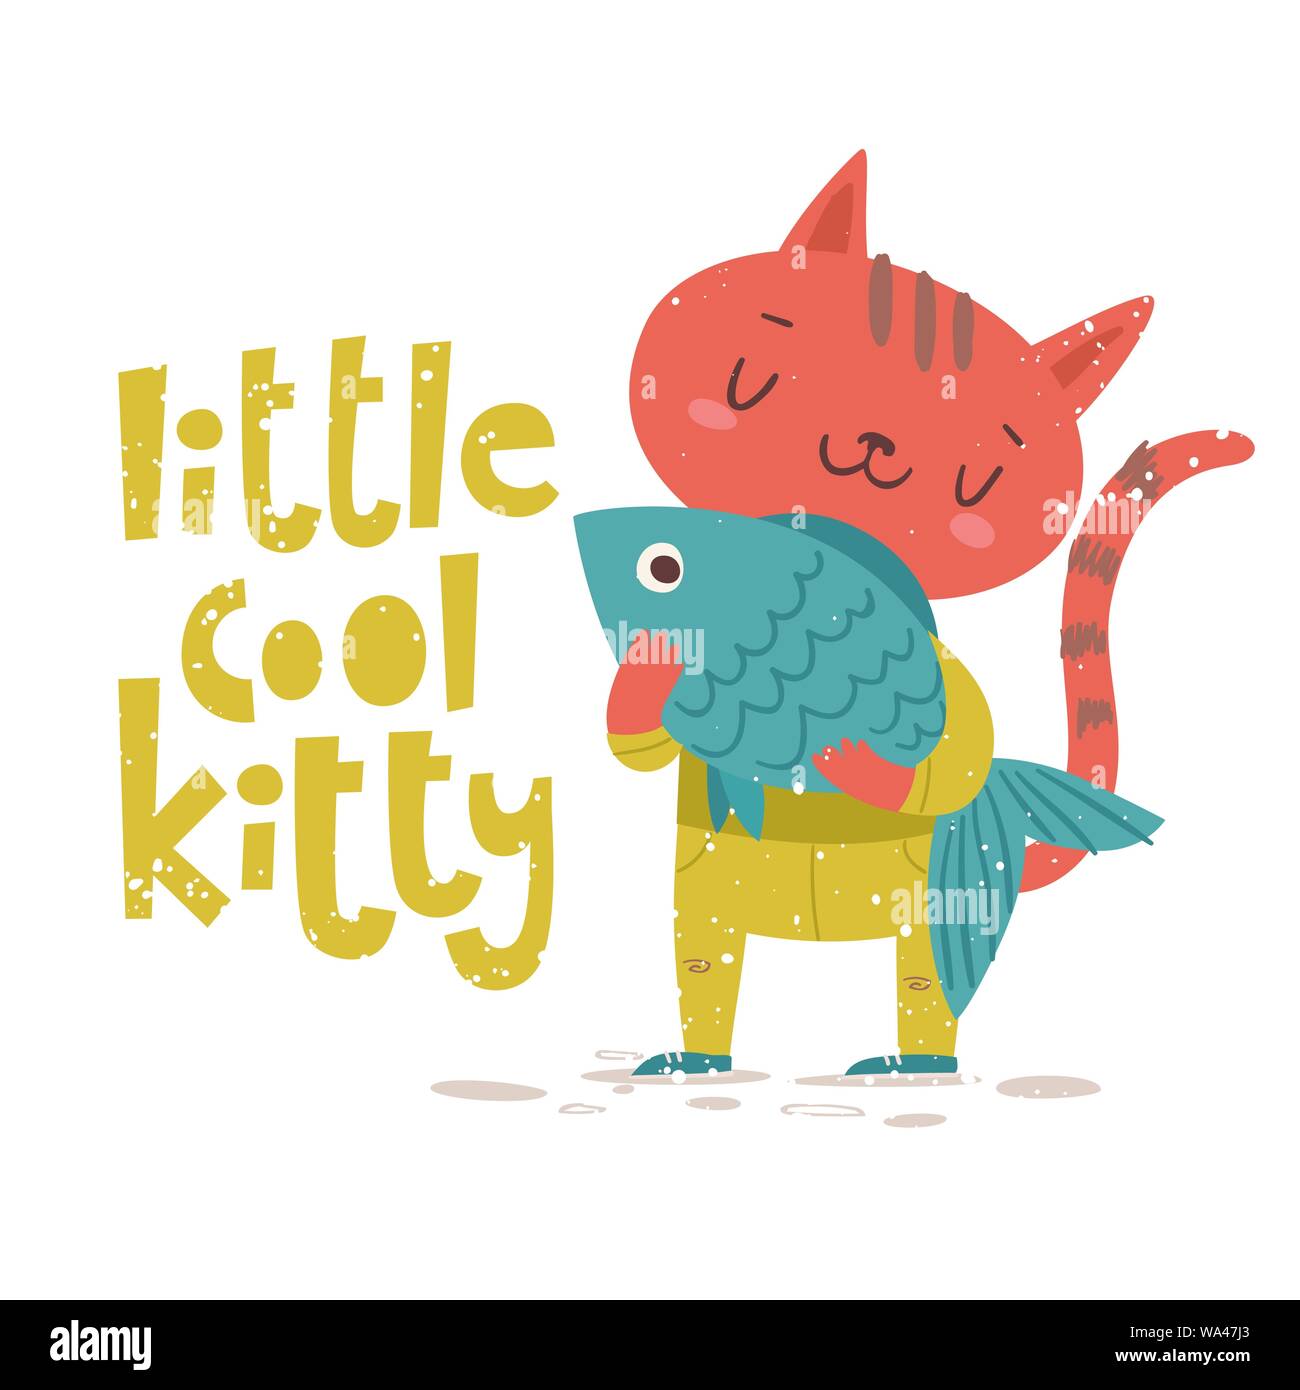 Vektor Karte mit wenig cool kitty Schriftzug und Katze Charakter. Stock Vektor